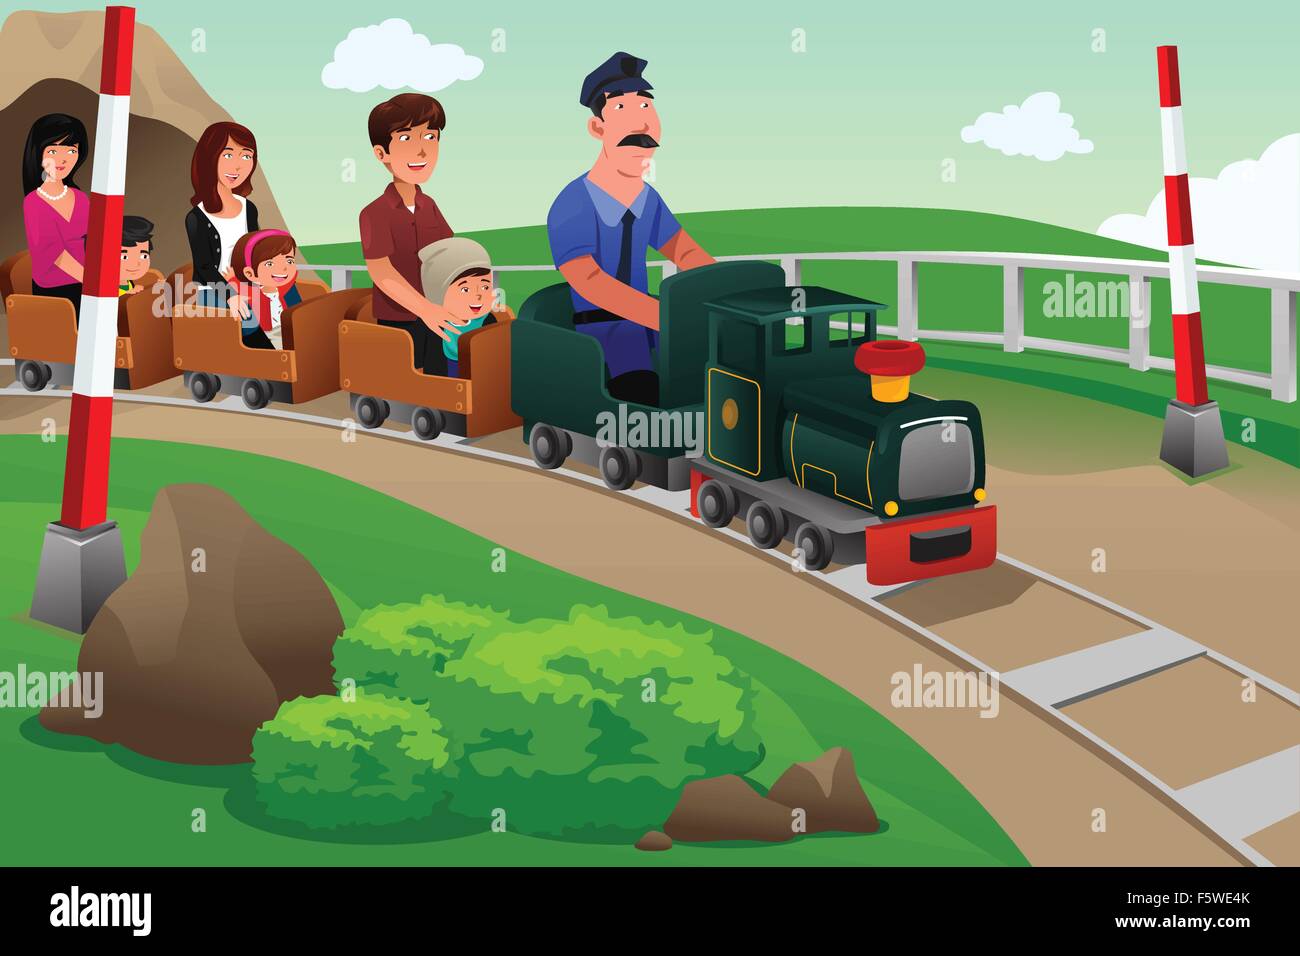 Eine Vektor-Illustration von Kindern und ihren Eltern einen kleinen Zug in einem Vergnügungspark Reiten Stock Vektor